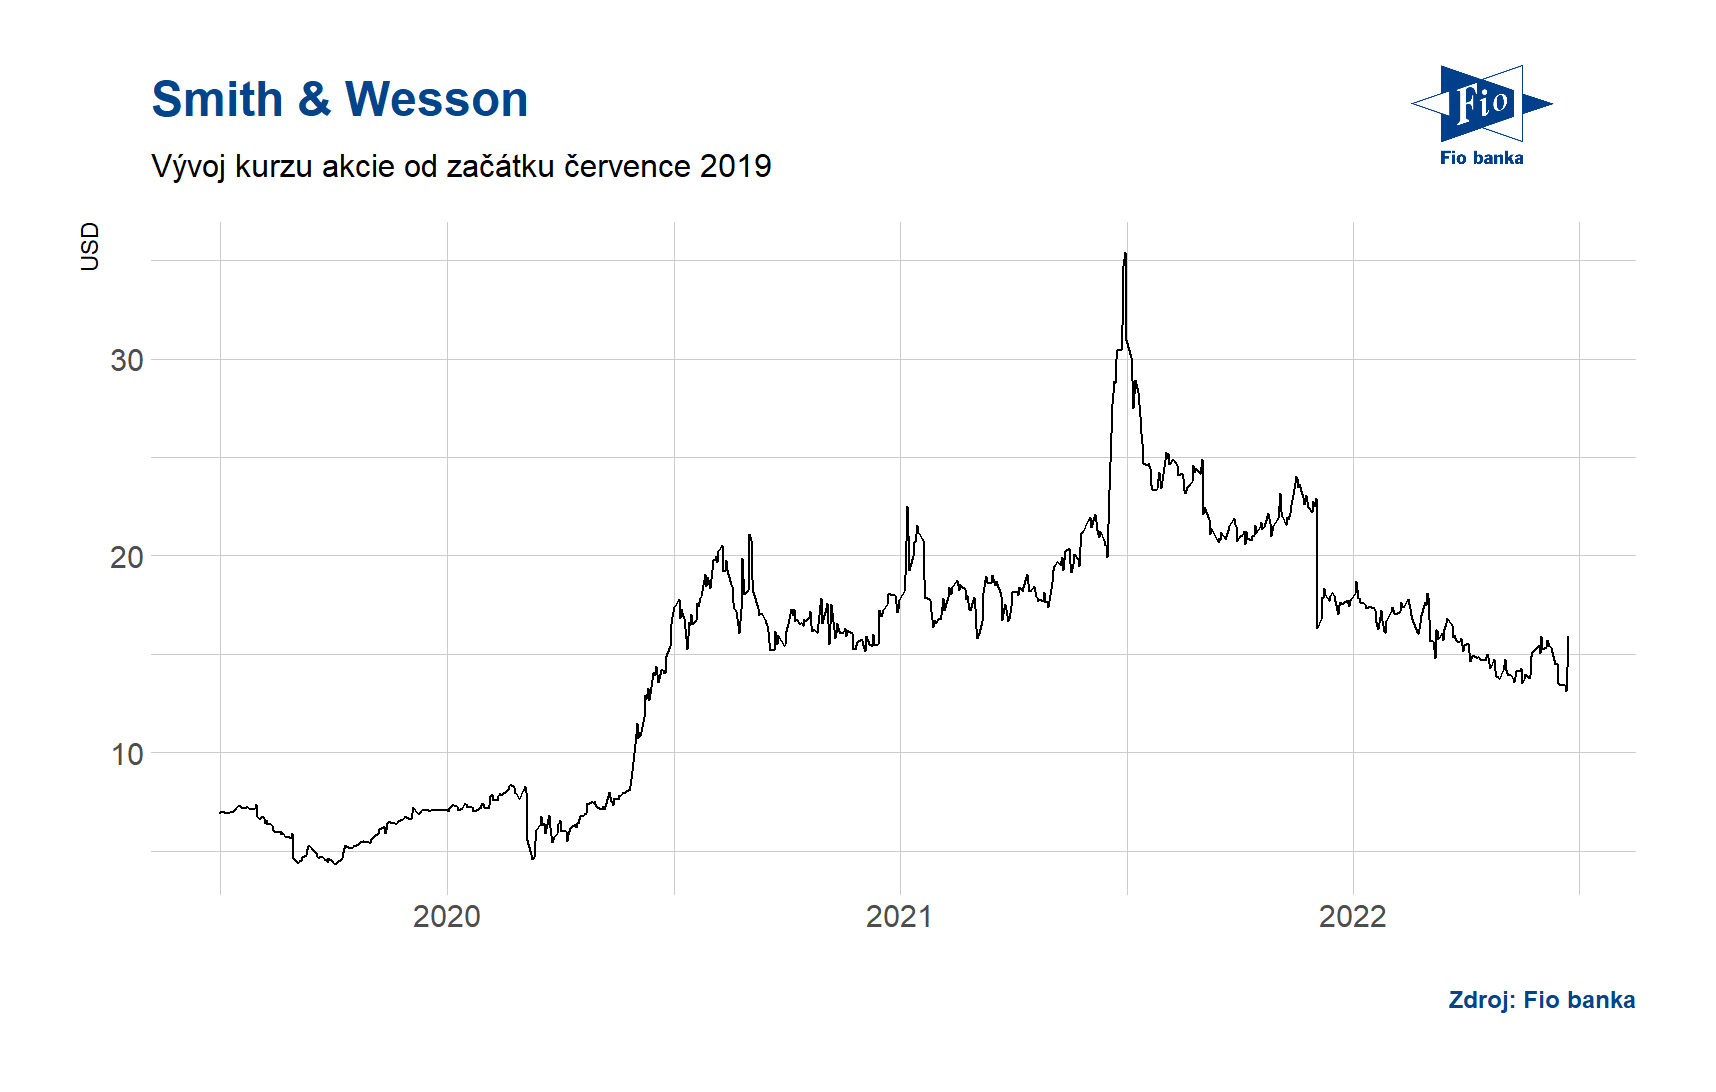 Vývoj ceny akcie společnosti Smith & Wesson